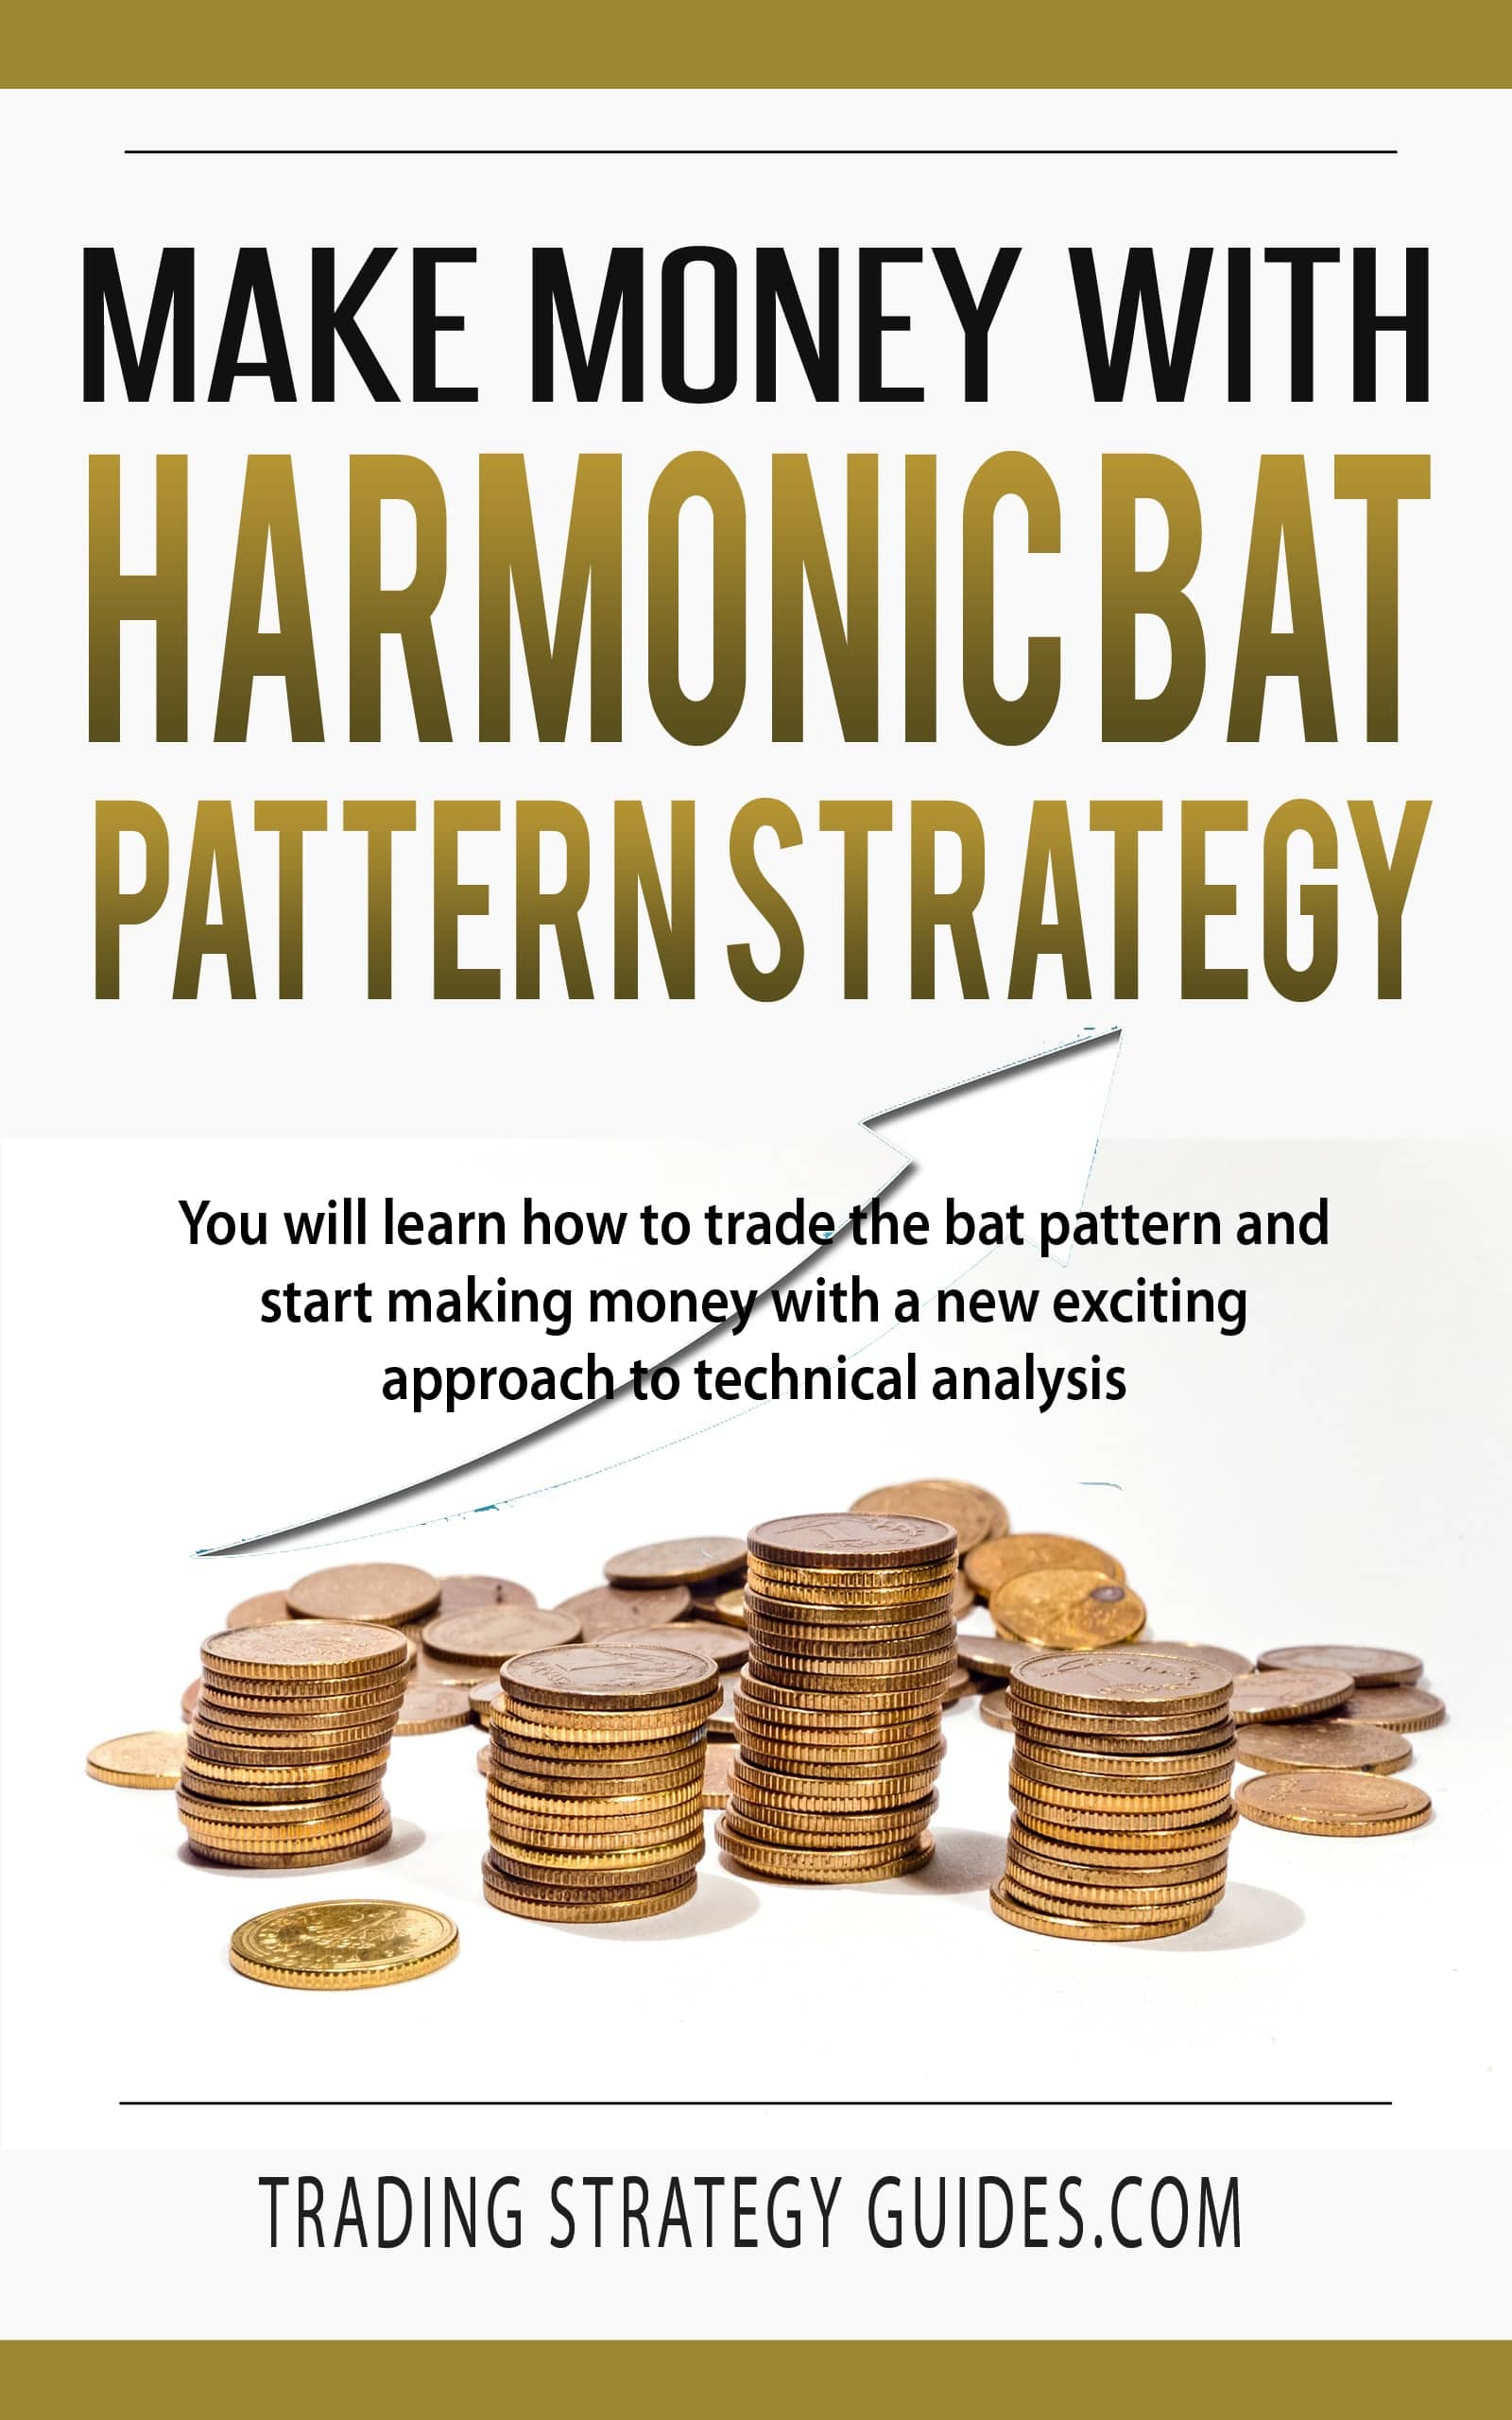 Harmonic Bat Pattern Strategy